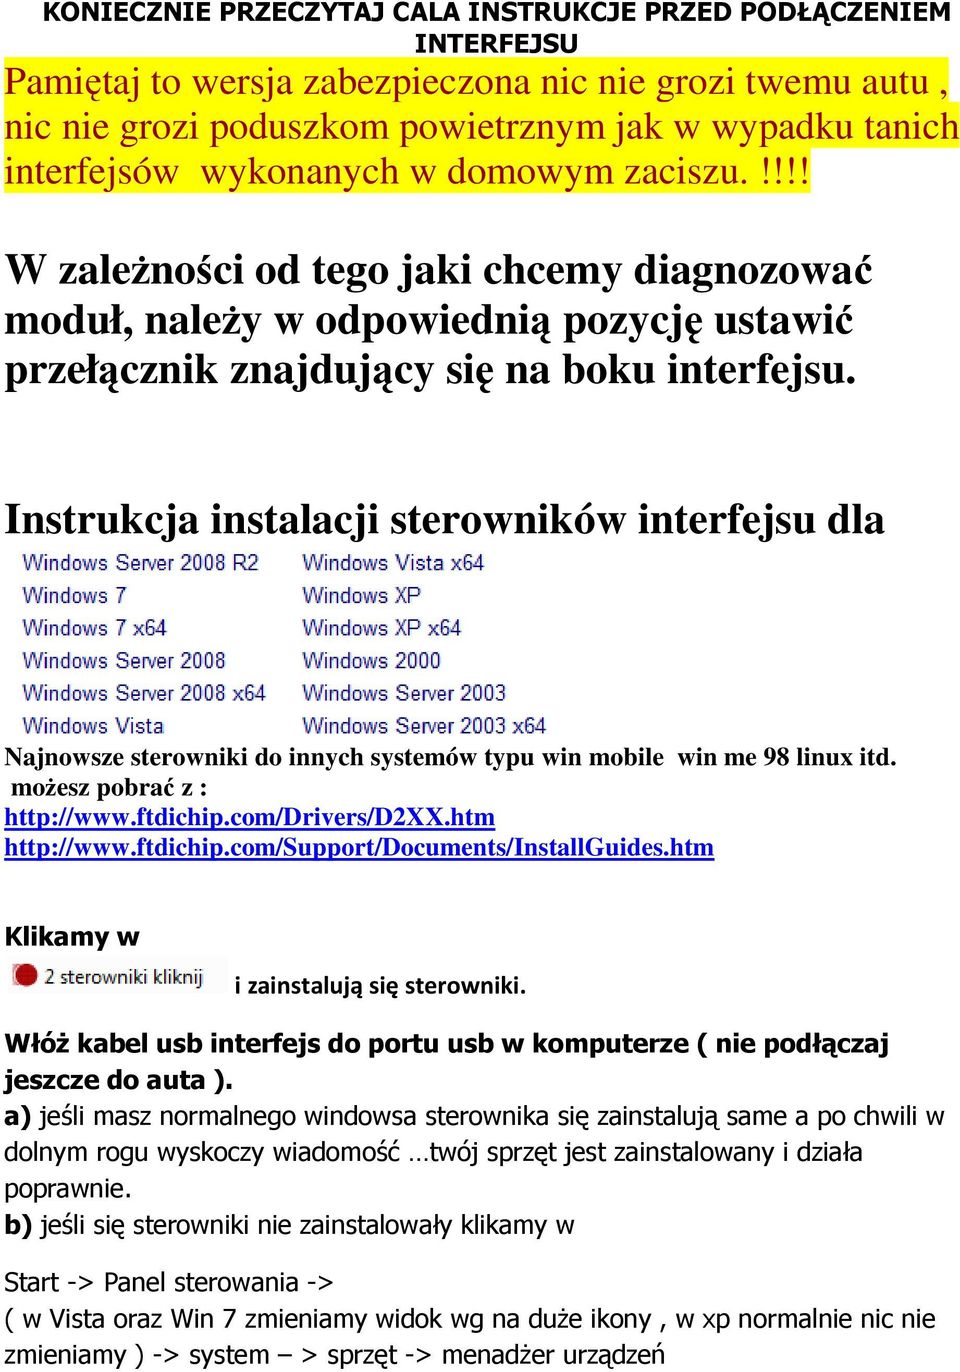 Instrukcja instalacji sterowników interfejsu dla Najnowsze sterowniki do innych systemów typu win mobile win me 98 linux itd. moŝesz pobrać z : http://www.ftdichip.com/drivers/d2xx.htm http://www.